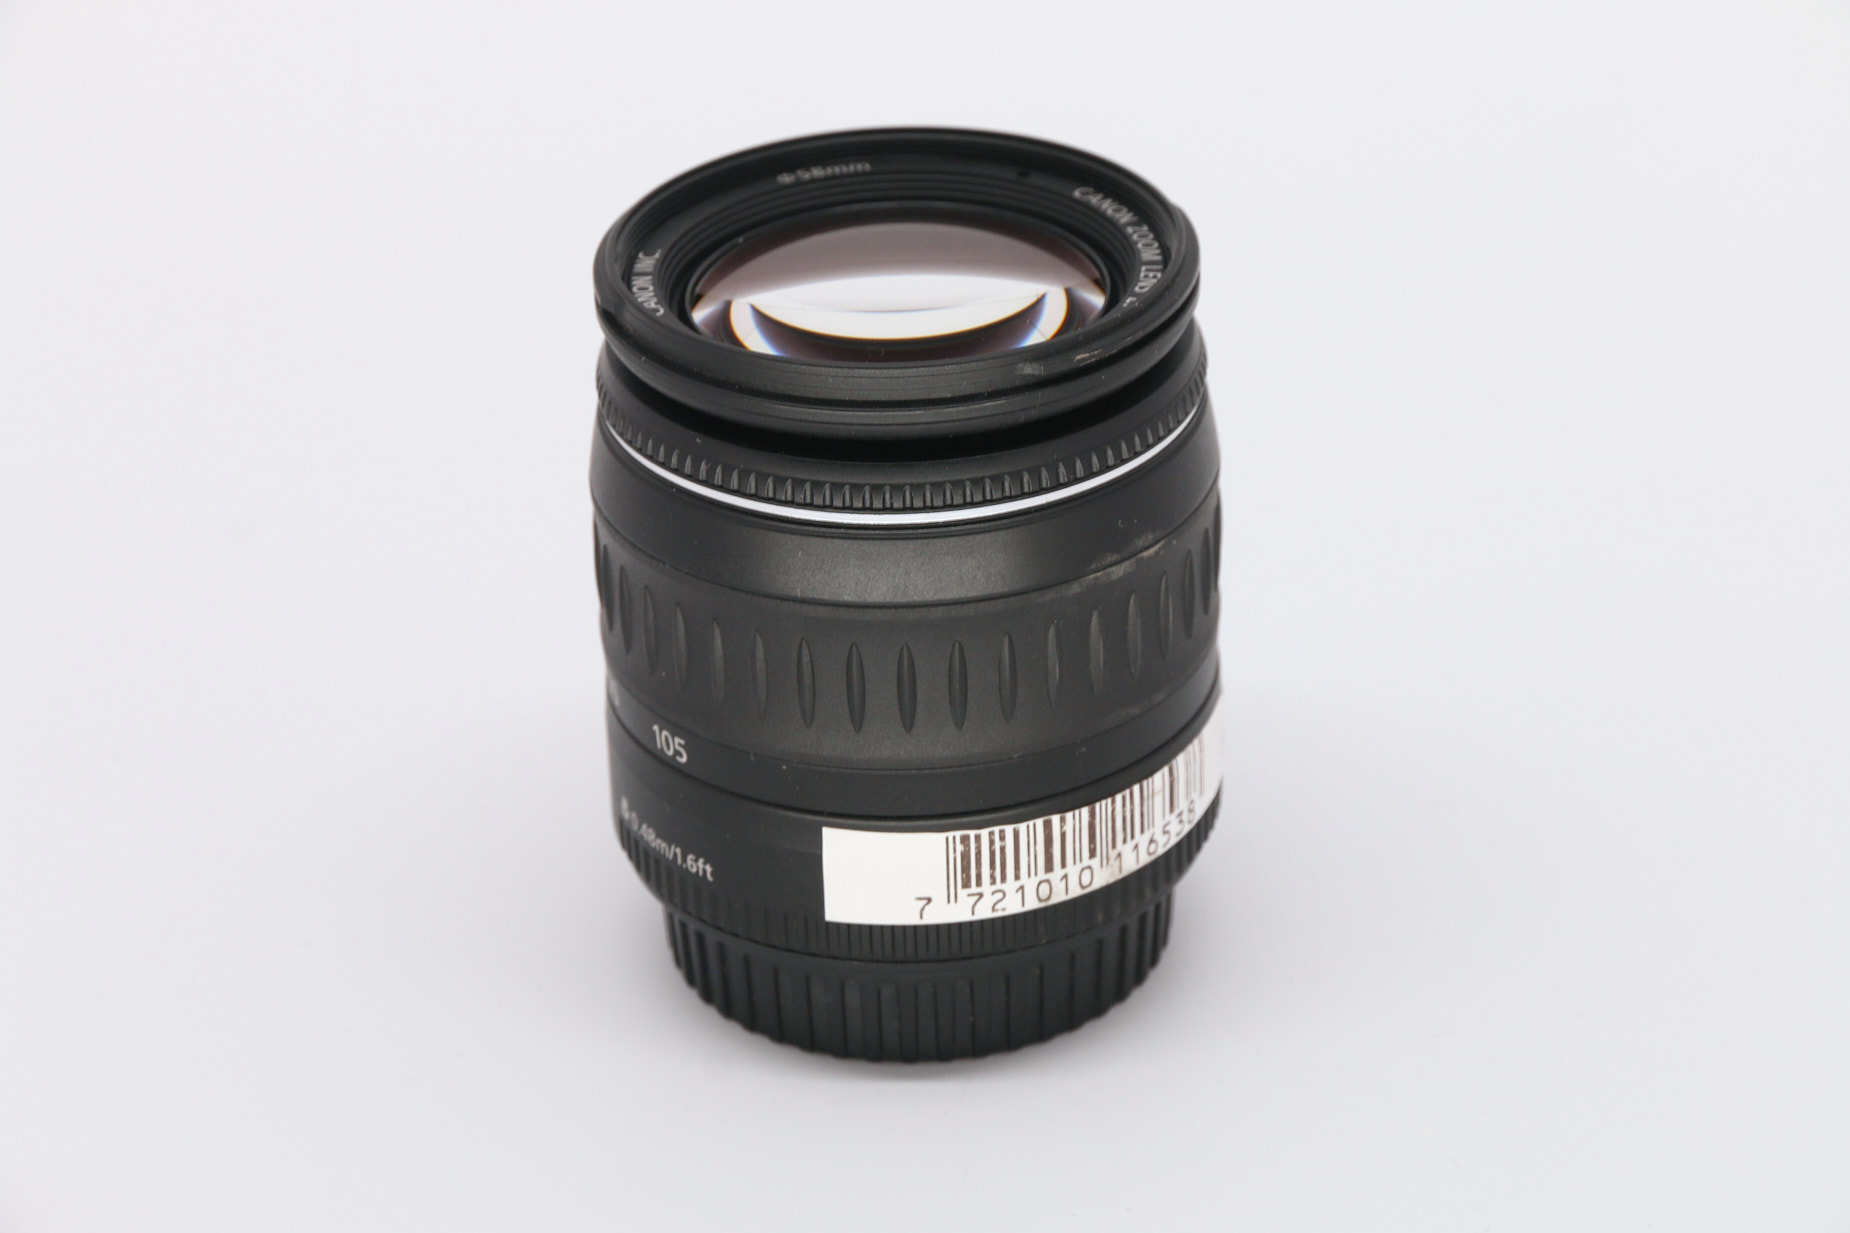 Canon EF 28-105mm f4-5.6 USM gebraucht Bild 02